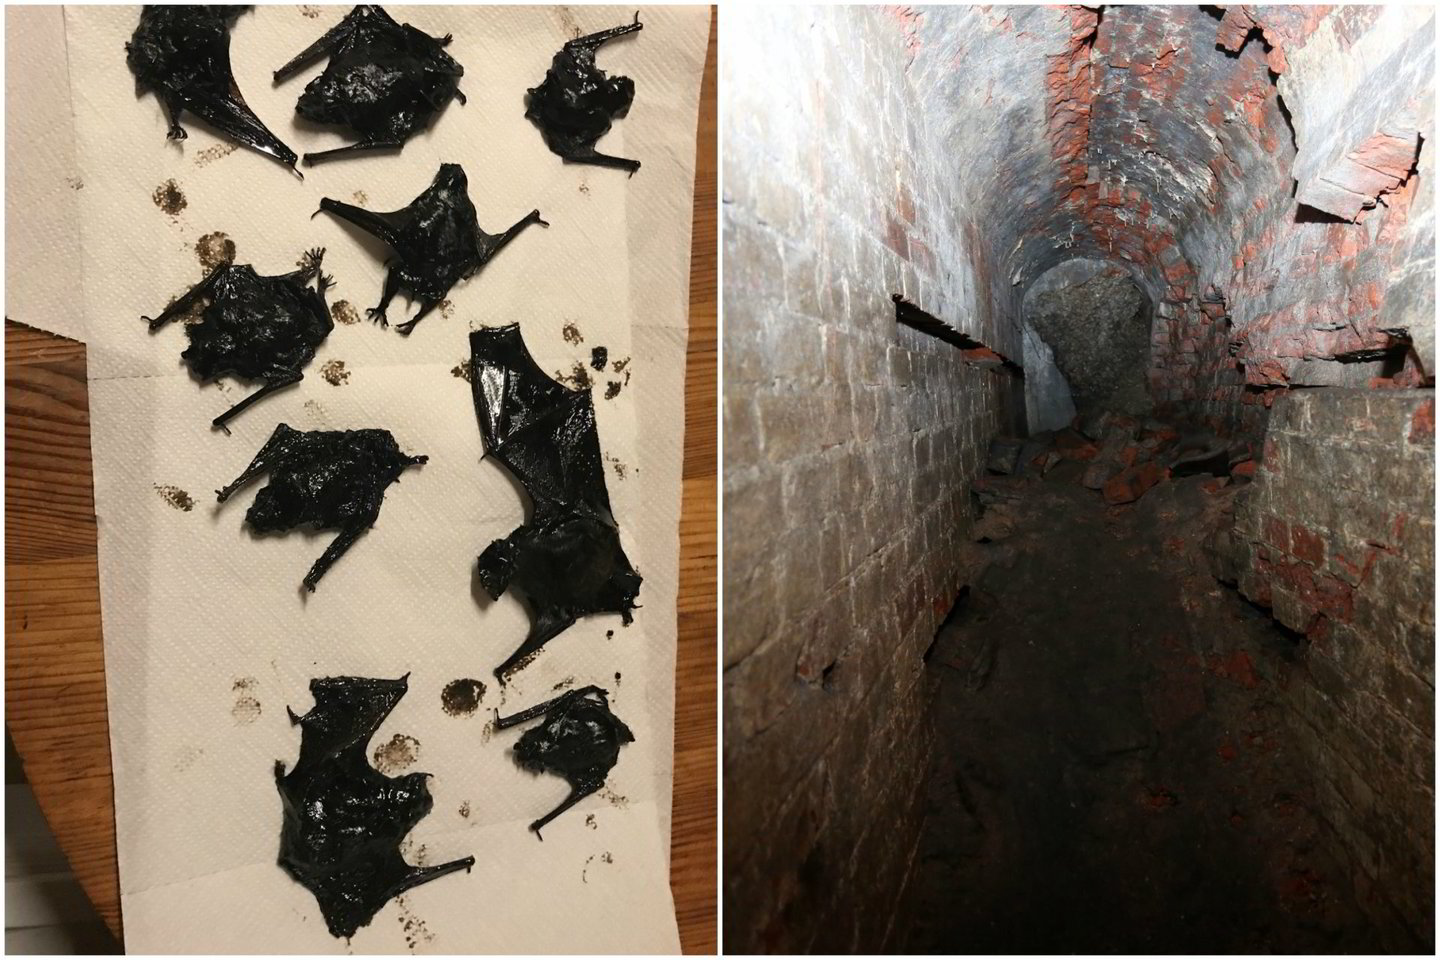  Išsiliejusiuose tepaluose Kauno III forte rasti negyvi šikšnosparniai. Dauguma jų buvo itin reti ir saugomi europiniu mastu.